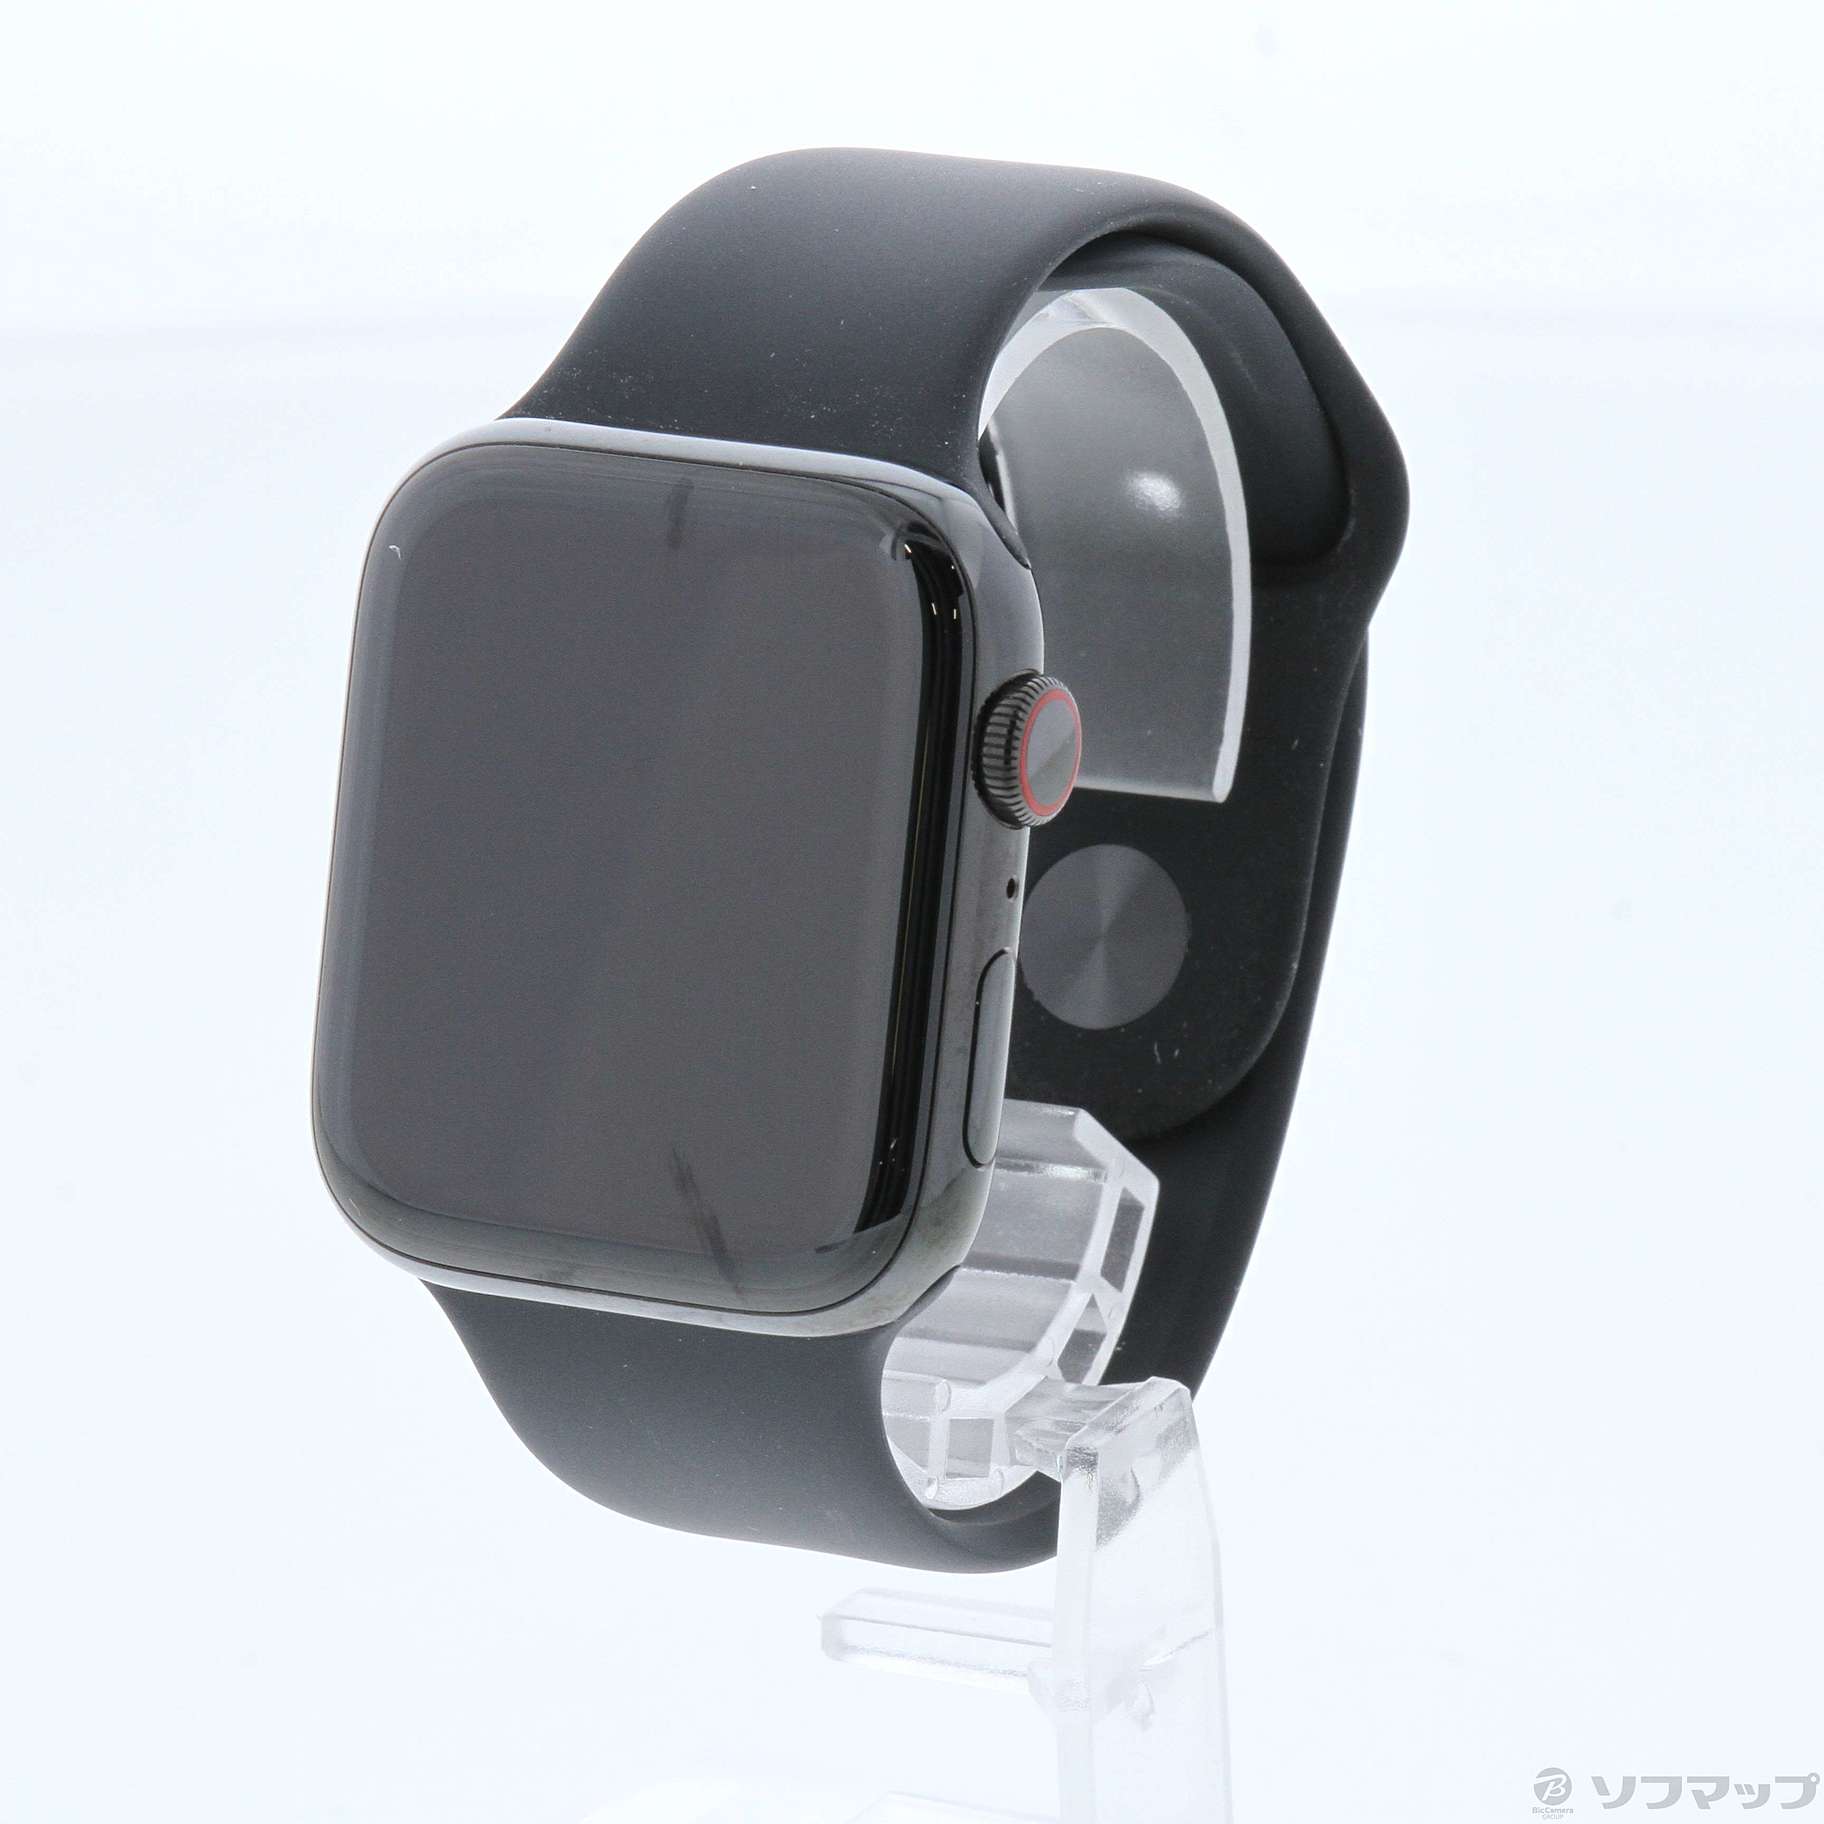 Apple Watch Series 5 GPS + Cellular 44mm スペースブラックステンレススチールケース ブラックスポーツバンド